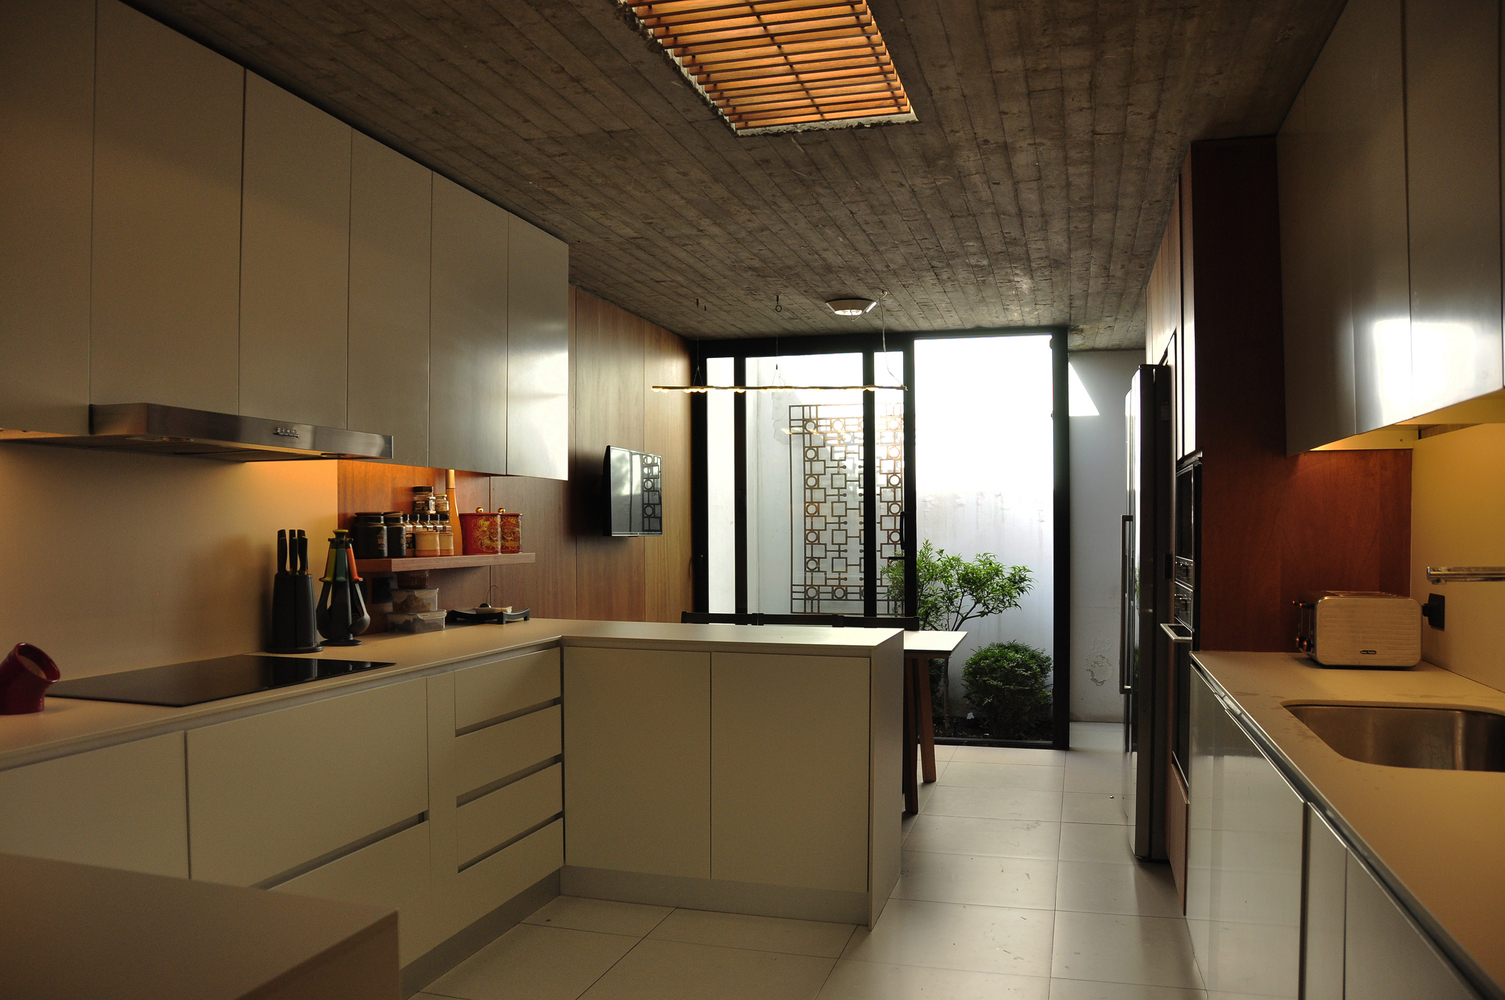 hình ảnh phòng bếp hiện đại có cửa mở ra giếng trời phía sau